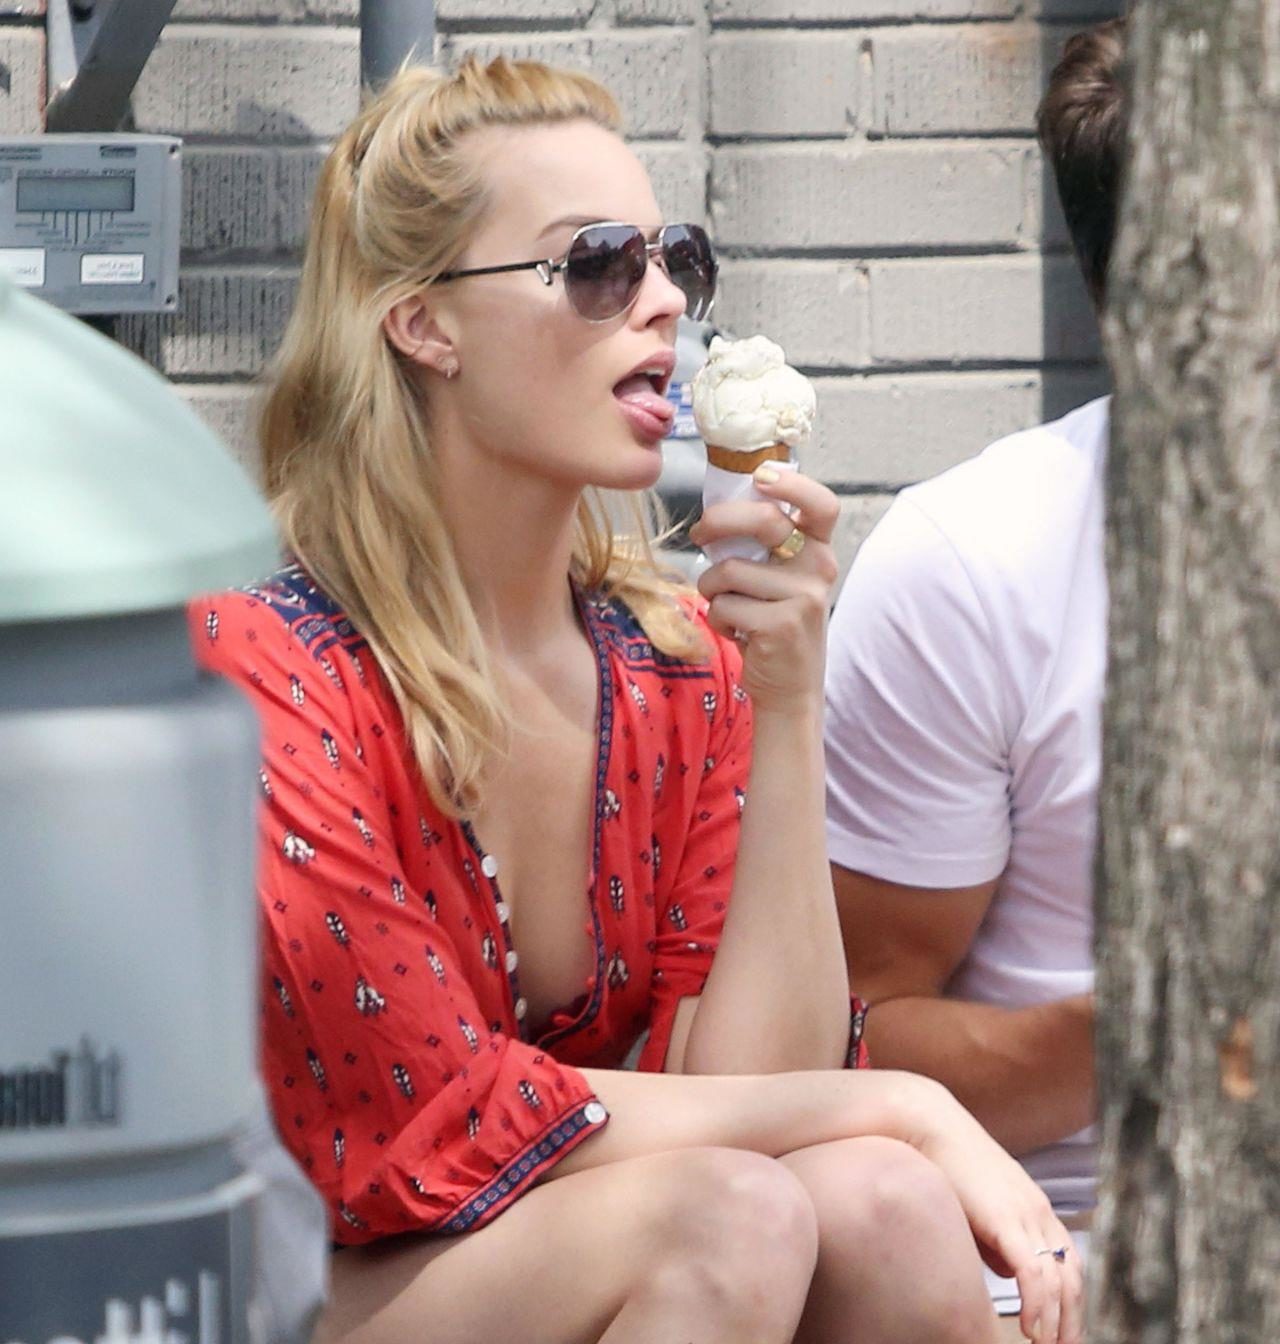 Margot Robbie licking her ice cream